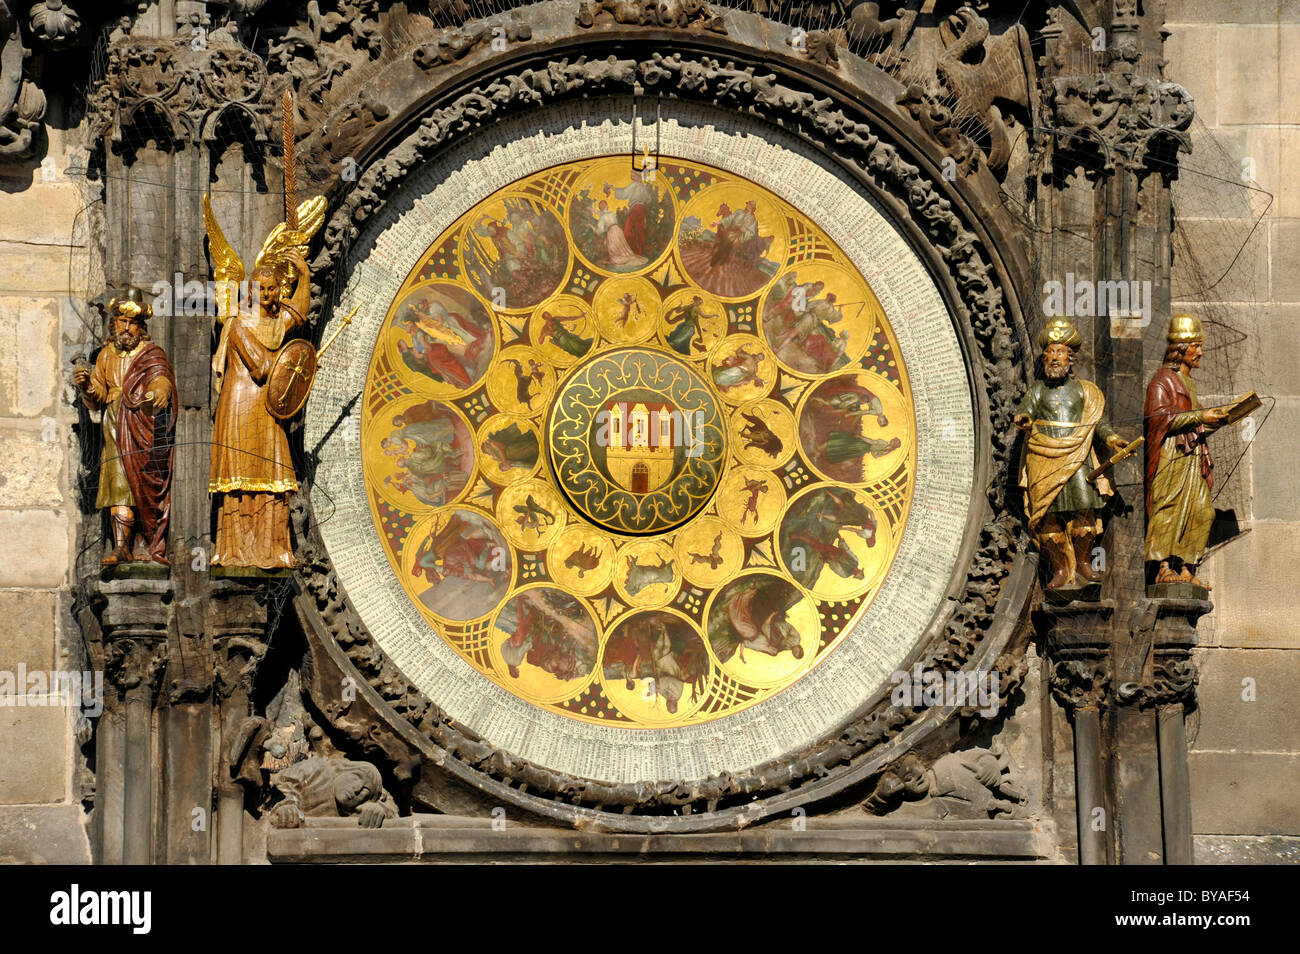 Kalender-Ziffernblatt der astronomischen Uhr auf dem Uhrturm des historischen Viertels von Altstädter Rathaus, Altstädter Ring, Prag Stockfoto